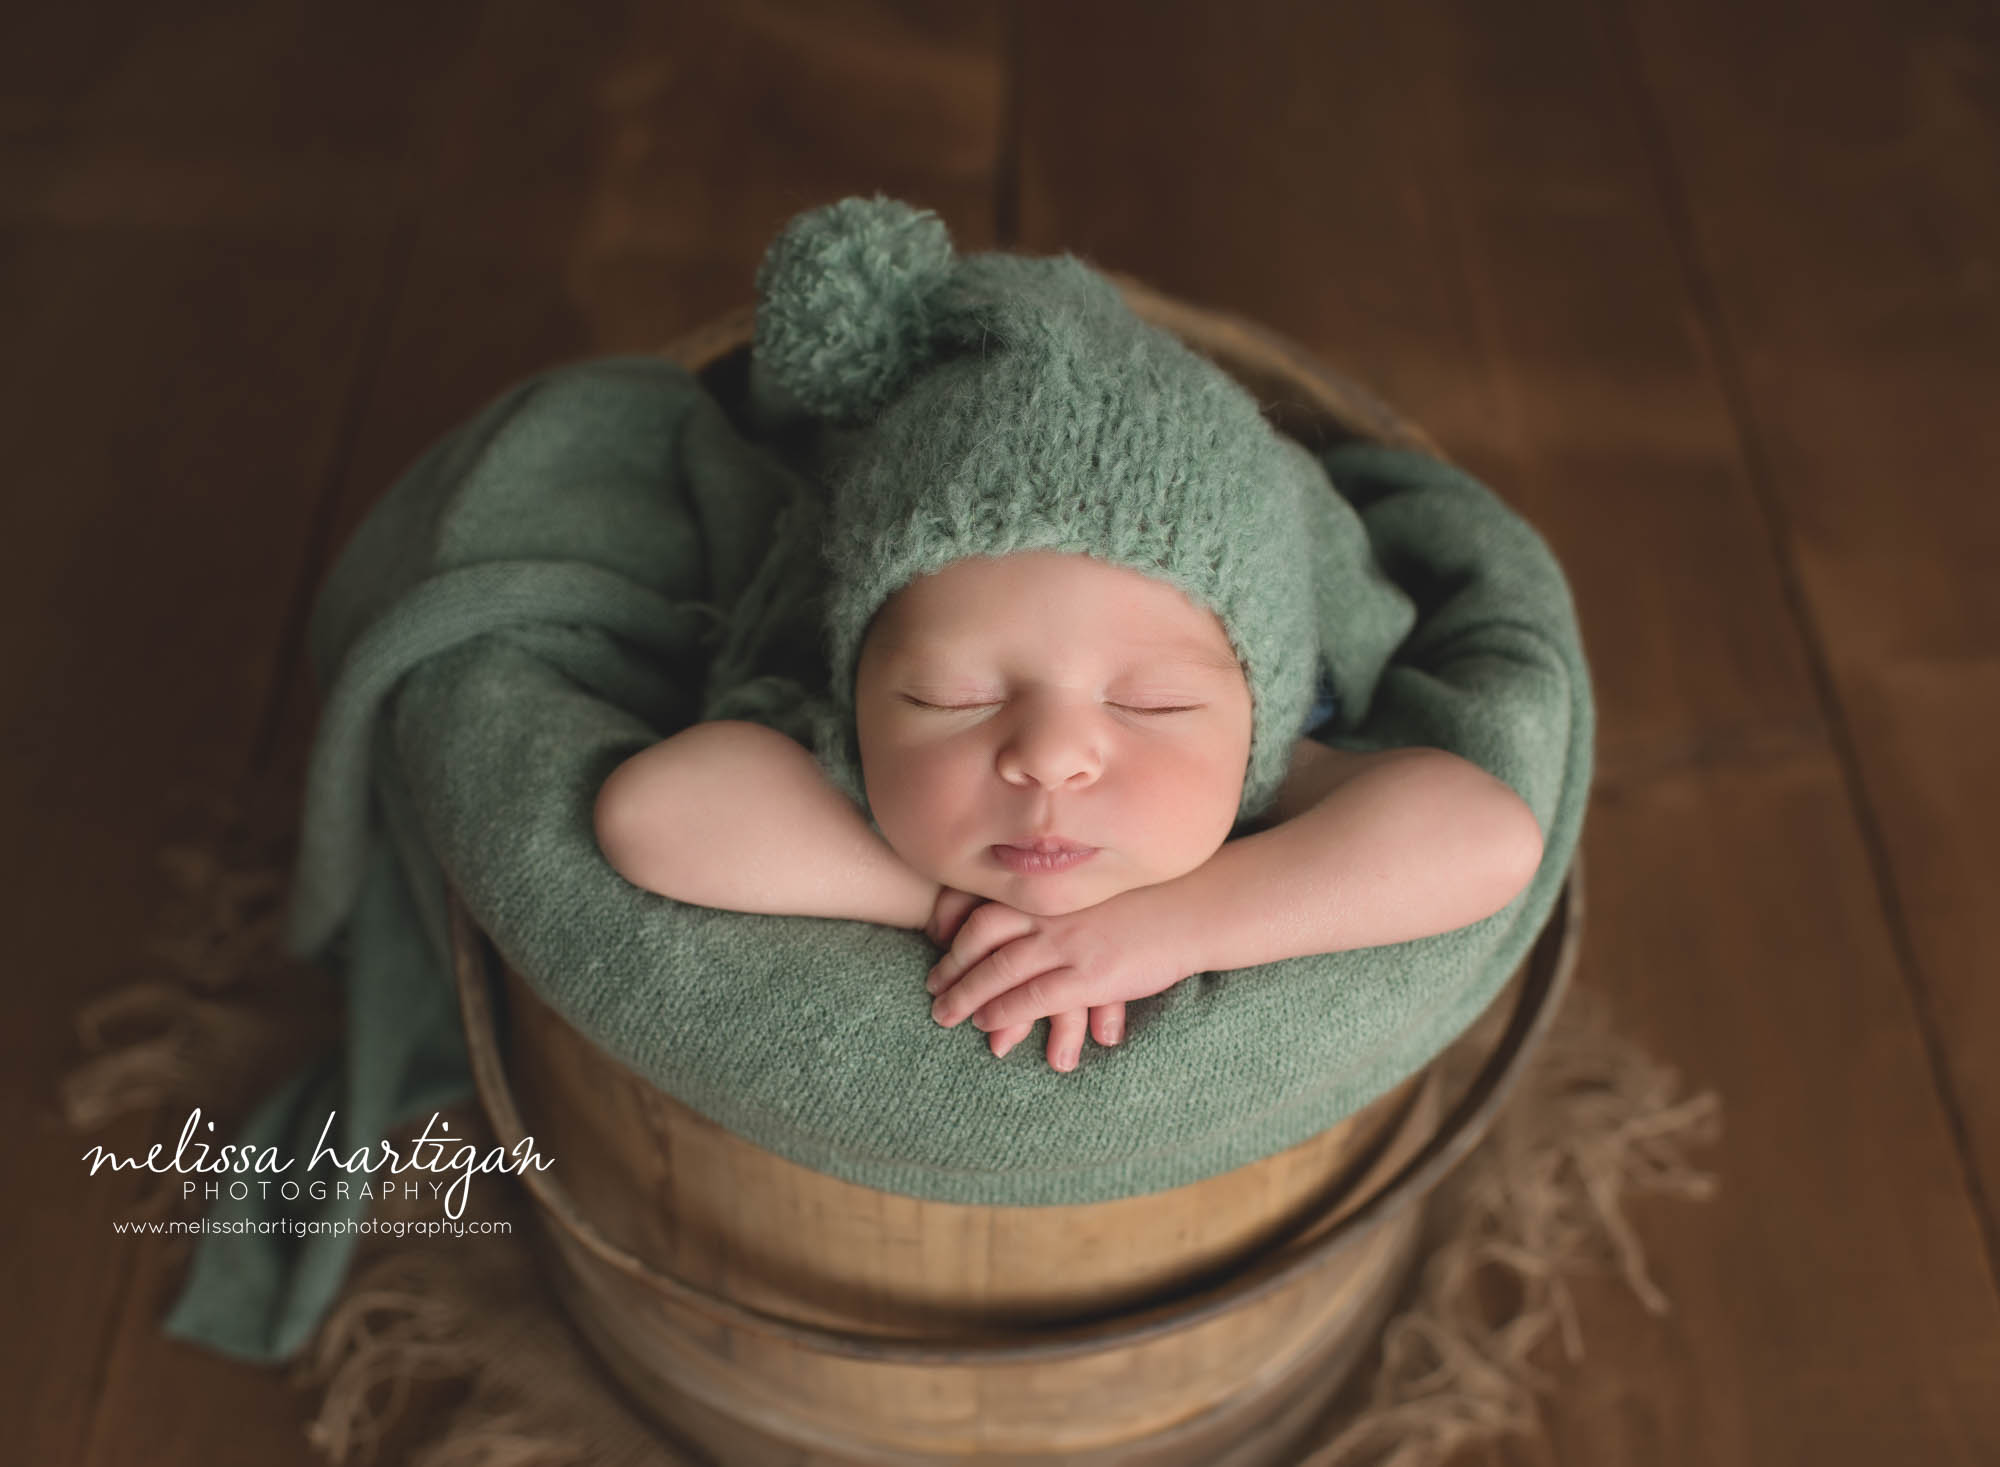 newborn baby boy wearing green knitted pom sleepy cap posed in wooden bucket